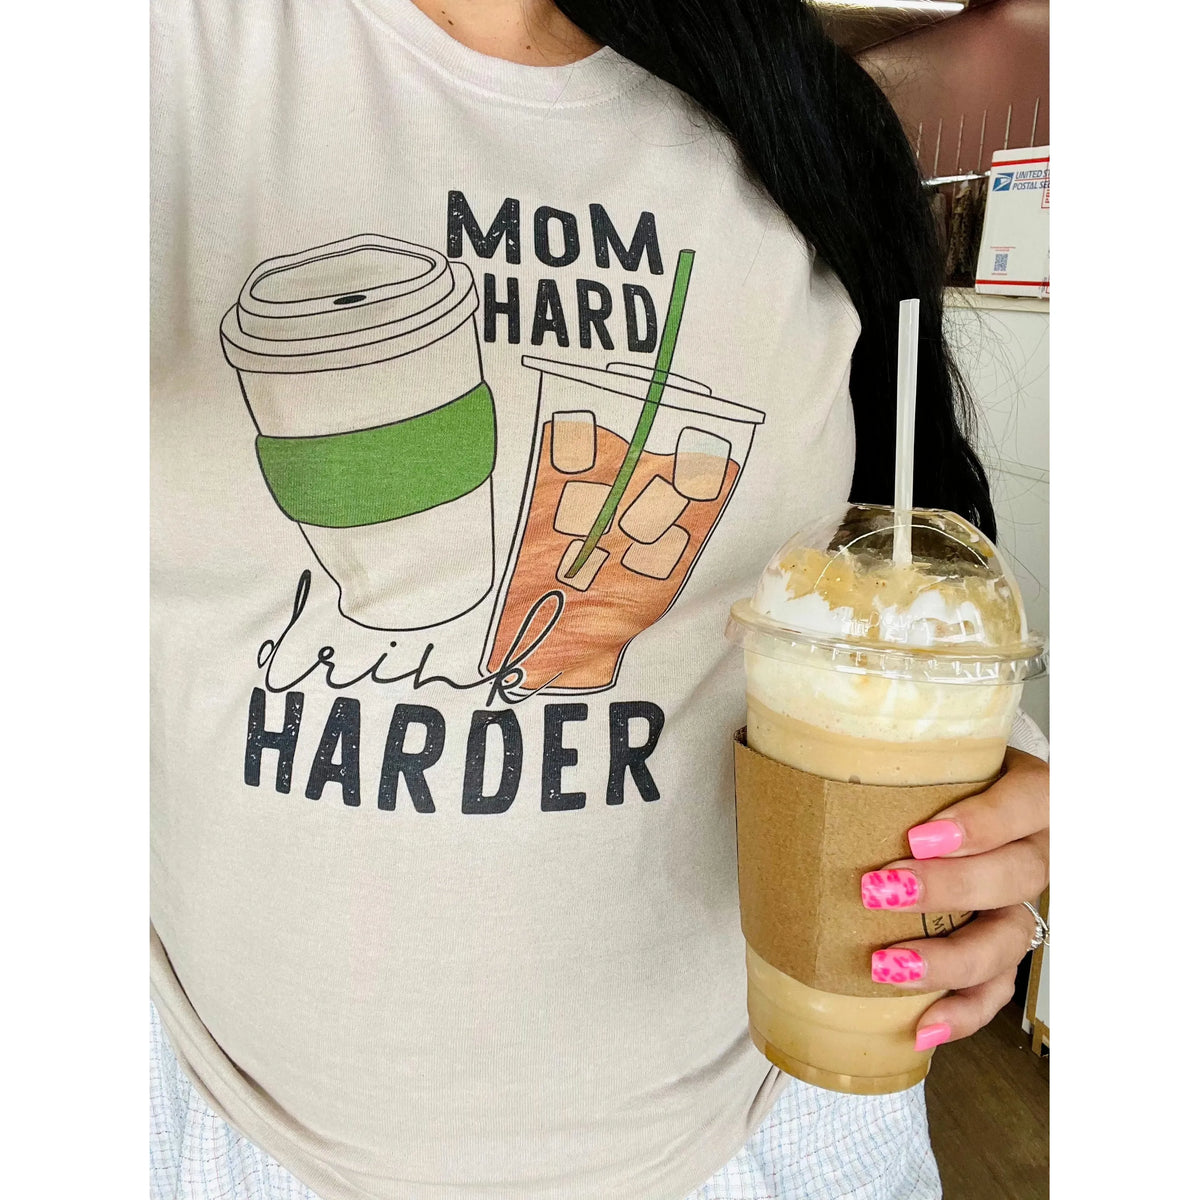 Mom Hard drink harder coffee tee or sweatshirt